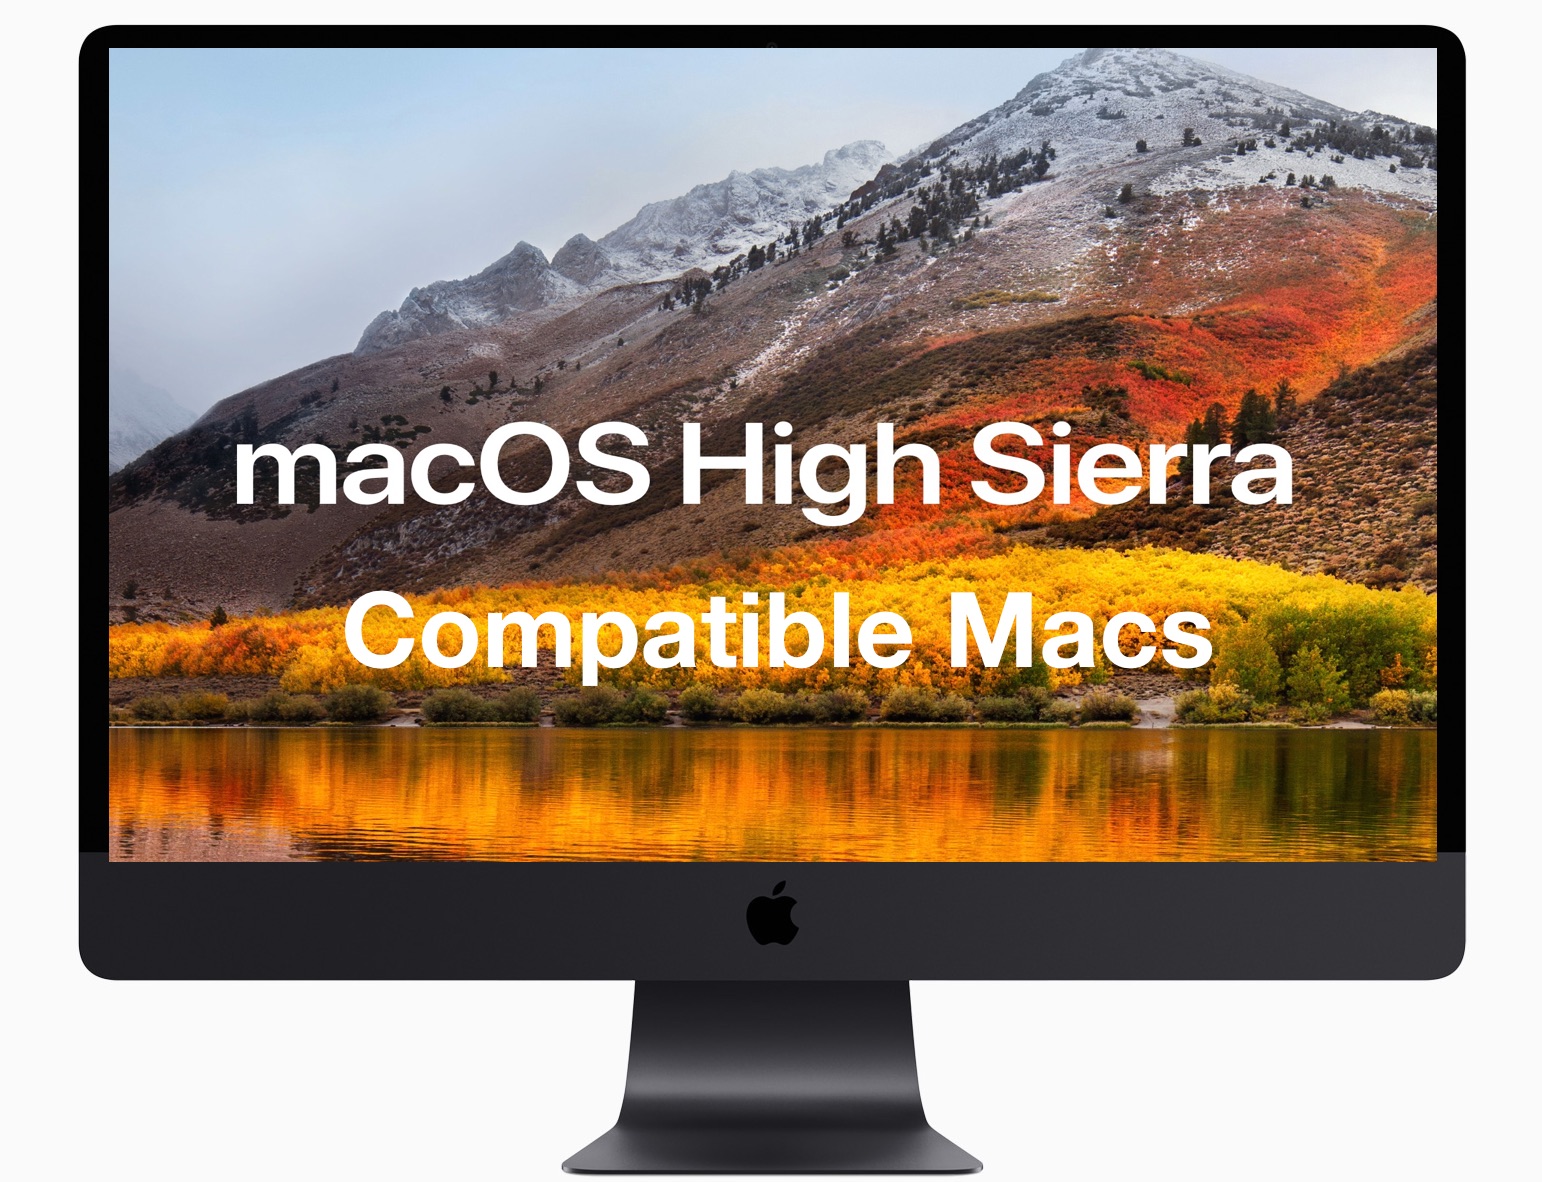 microsoft word mac high sierra